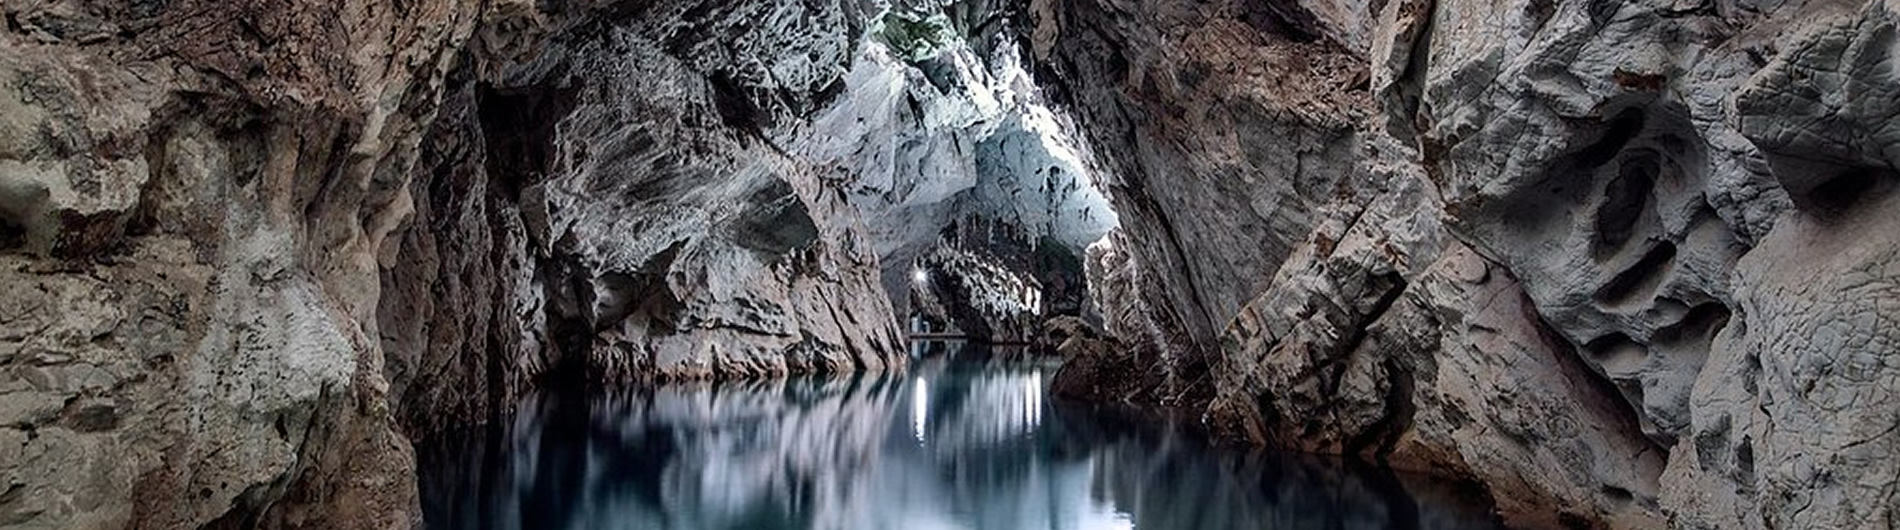 Tre grotte, tre fiumi 